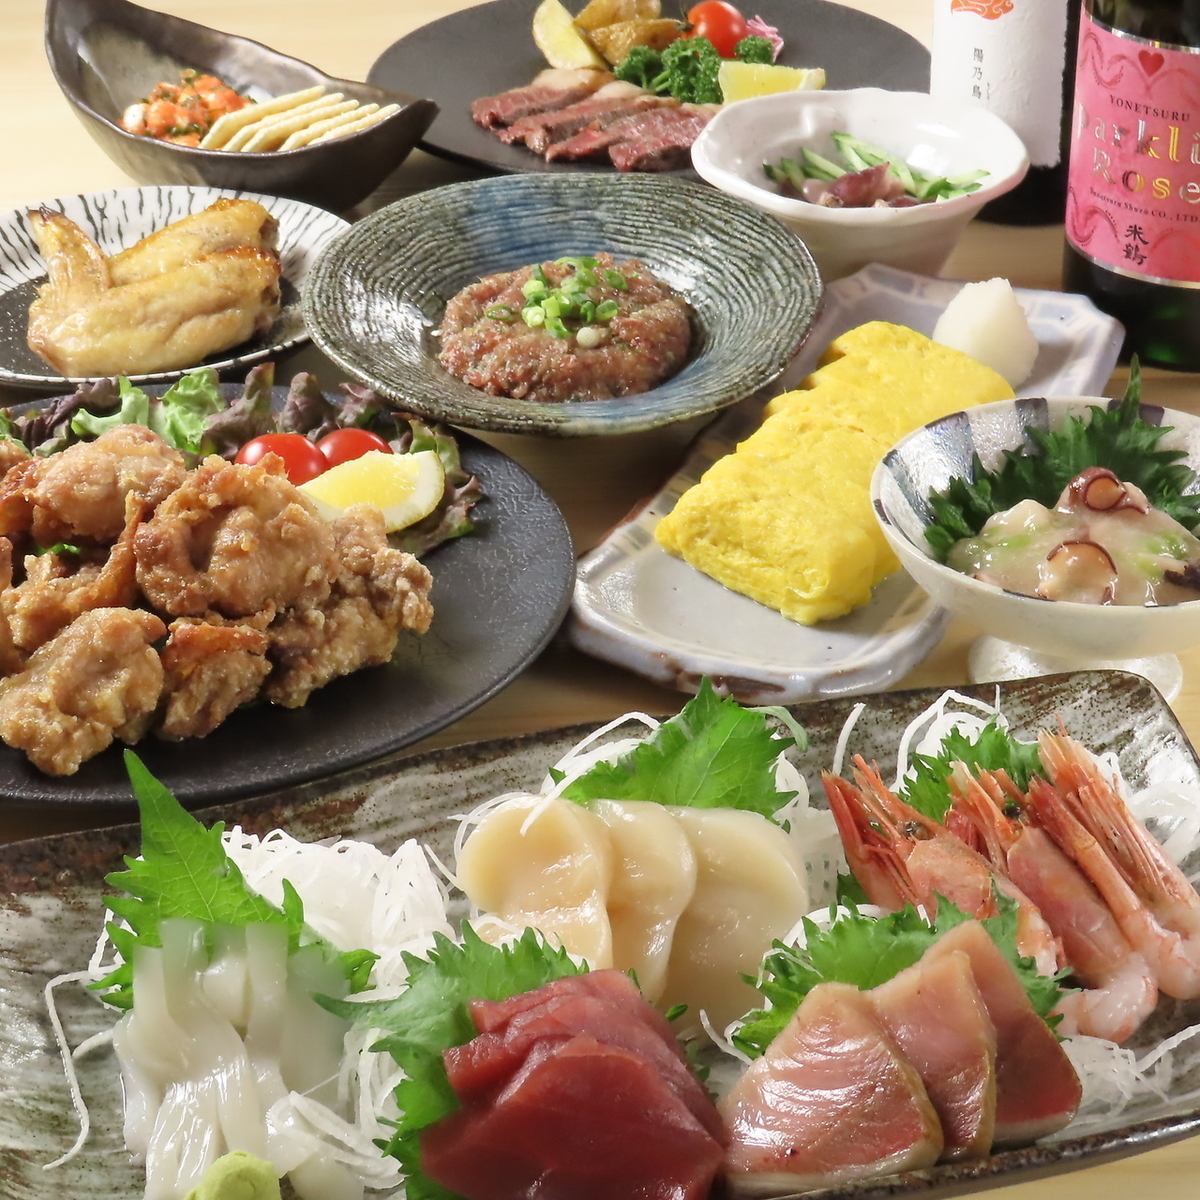 豊富な日本酒と小料理。お一人様も入りやすい雰囲気の良さが魅力